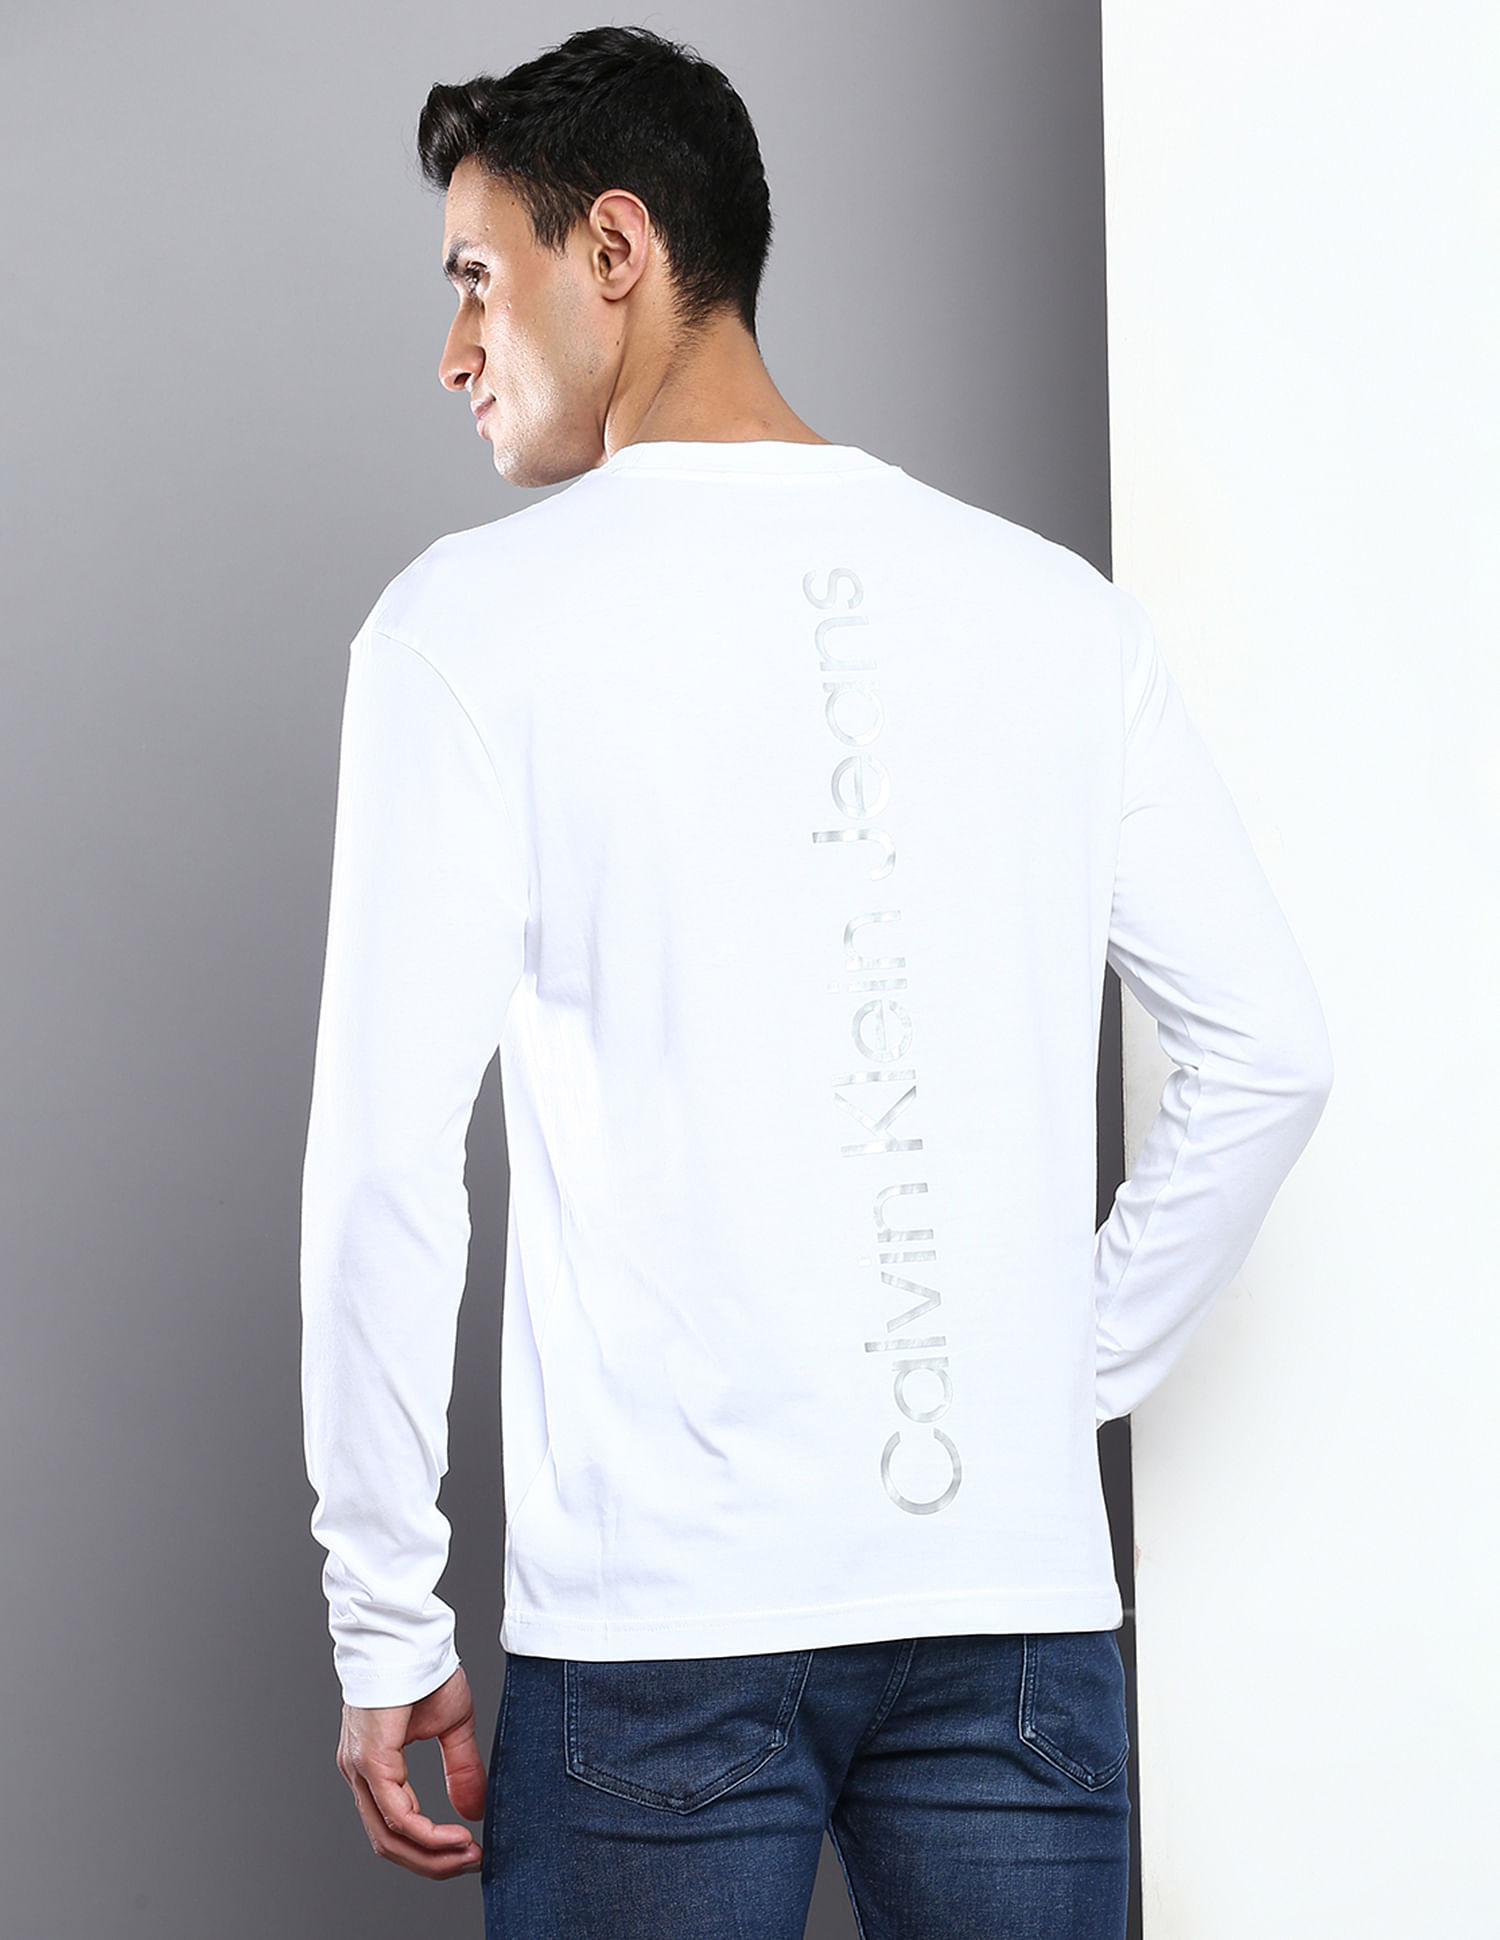 Calvin Klein Jeans institutional back logo long sleeve t-shirt